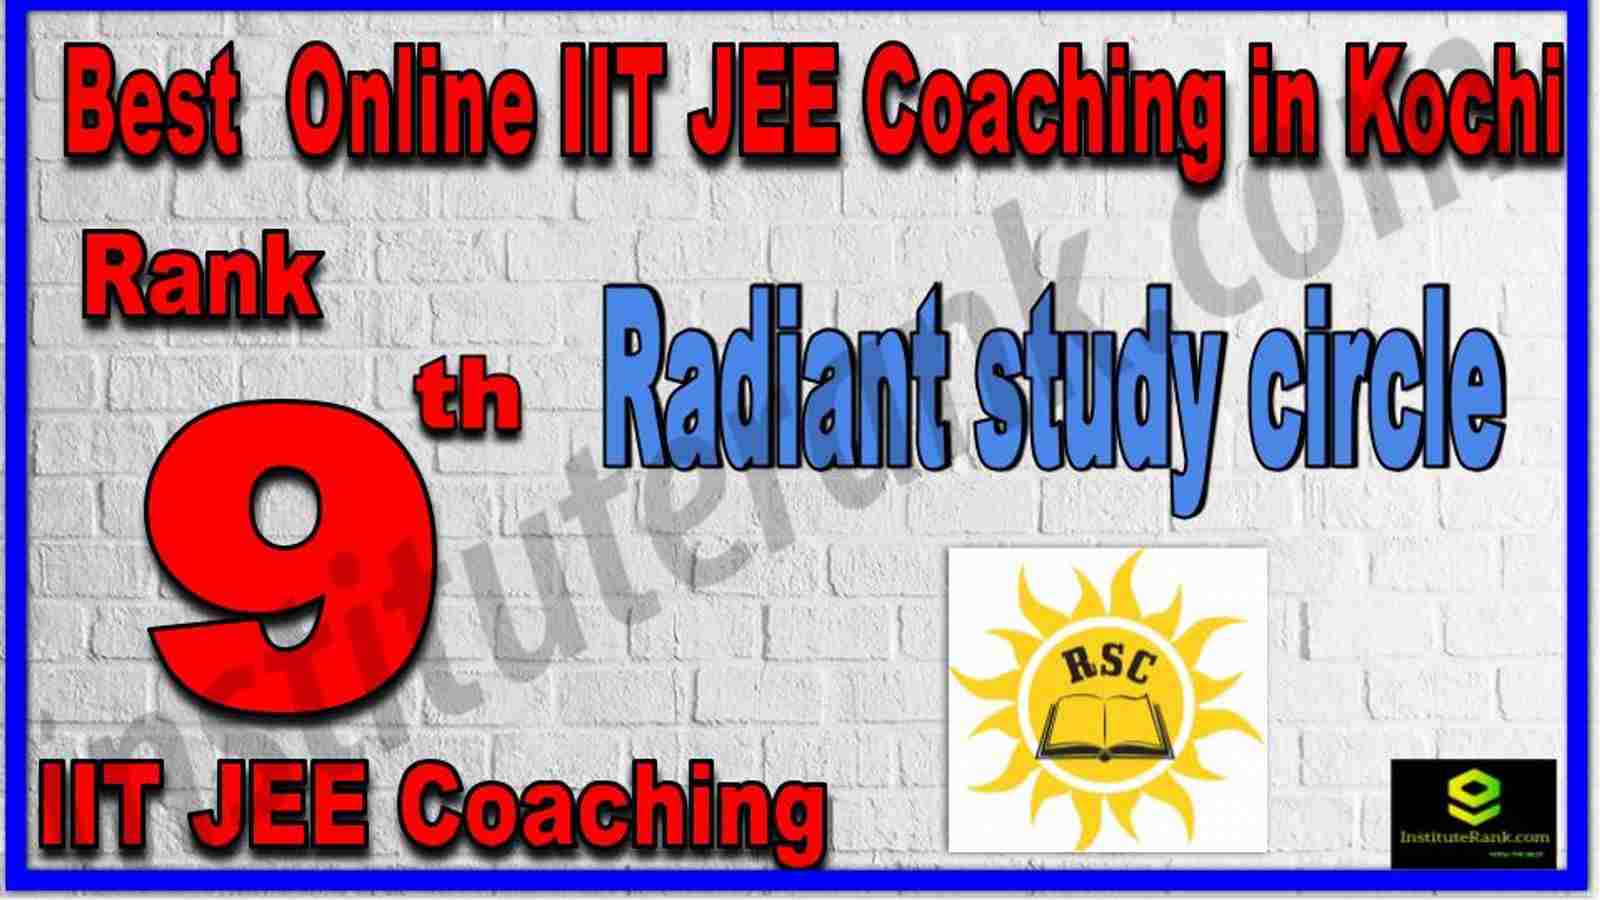 Rank 9th Best Online IIT JEE Coaching in Kochi